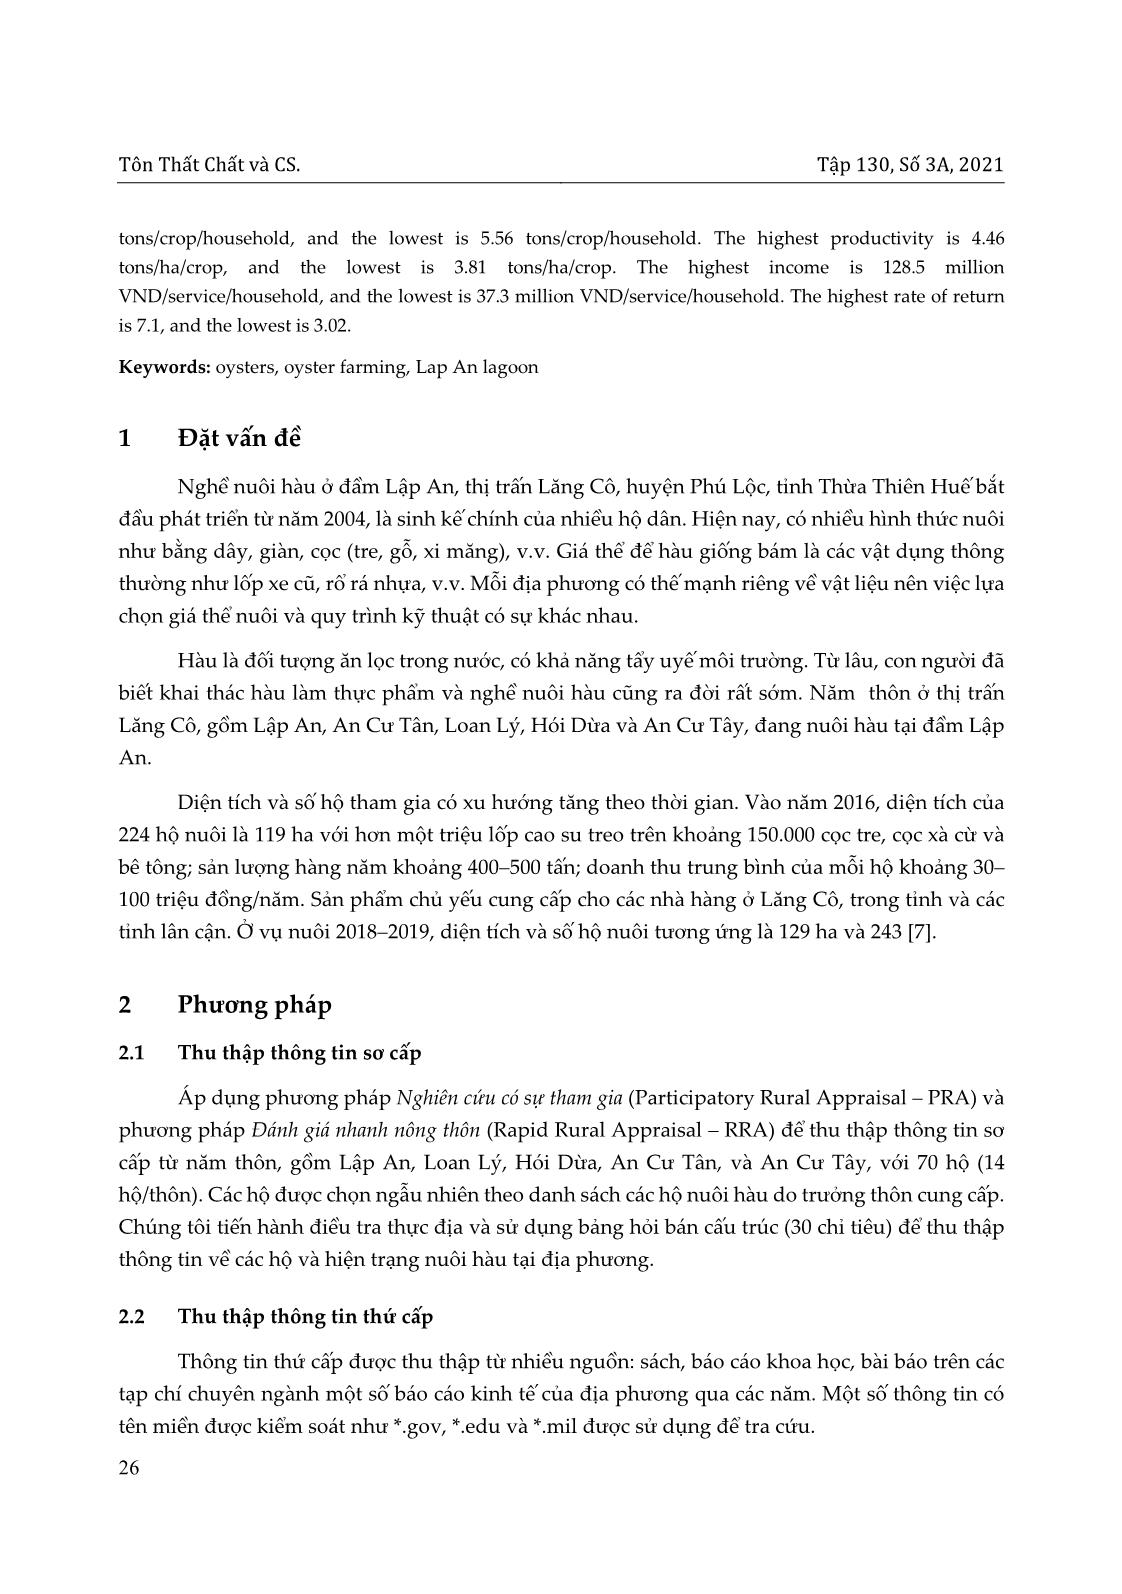 Hiện trạng nuôi hàu tại đầm Lập an, thị trấn lăng cô huyện Phú Lộc, tỉnh Thừa Thiên Huế trang 2